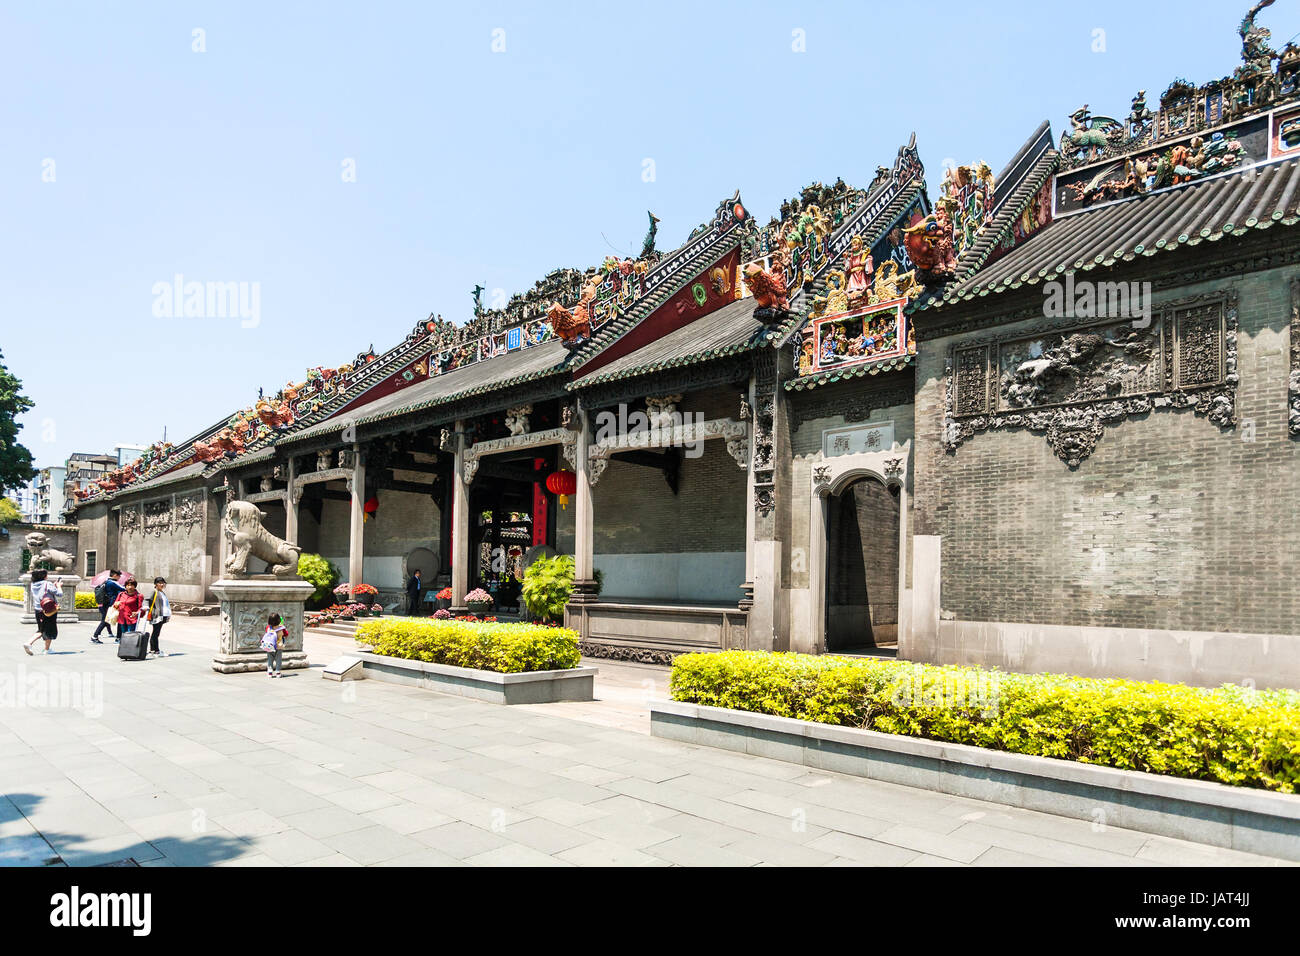 GUANGZHOU - CINA - Aprile 1, 2017: persone vicino a Chen Clan sala ancestrale tempio accademico (Guangdong Folk Art Museum) nella città di Guangzhou. La casa è stata pr Foto Stock